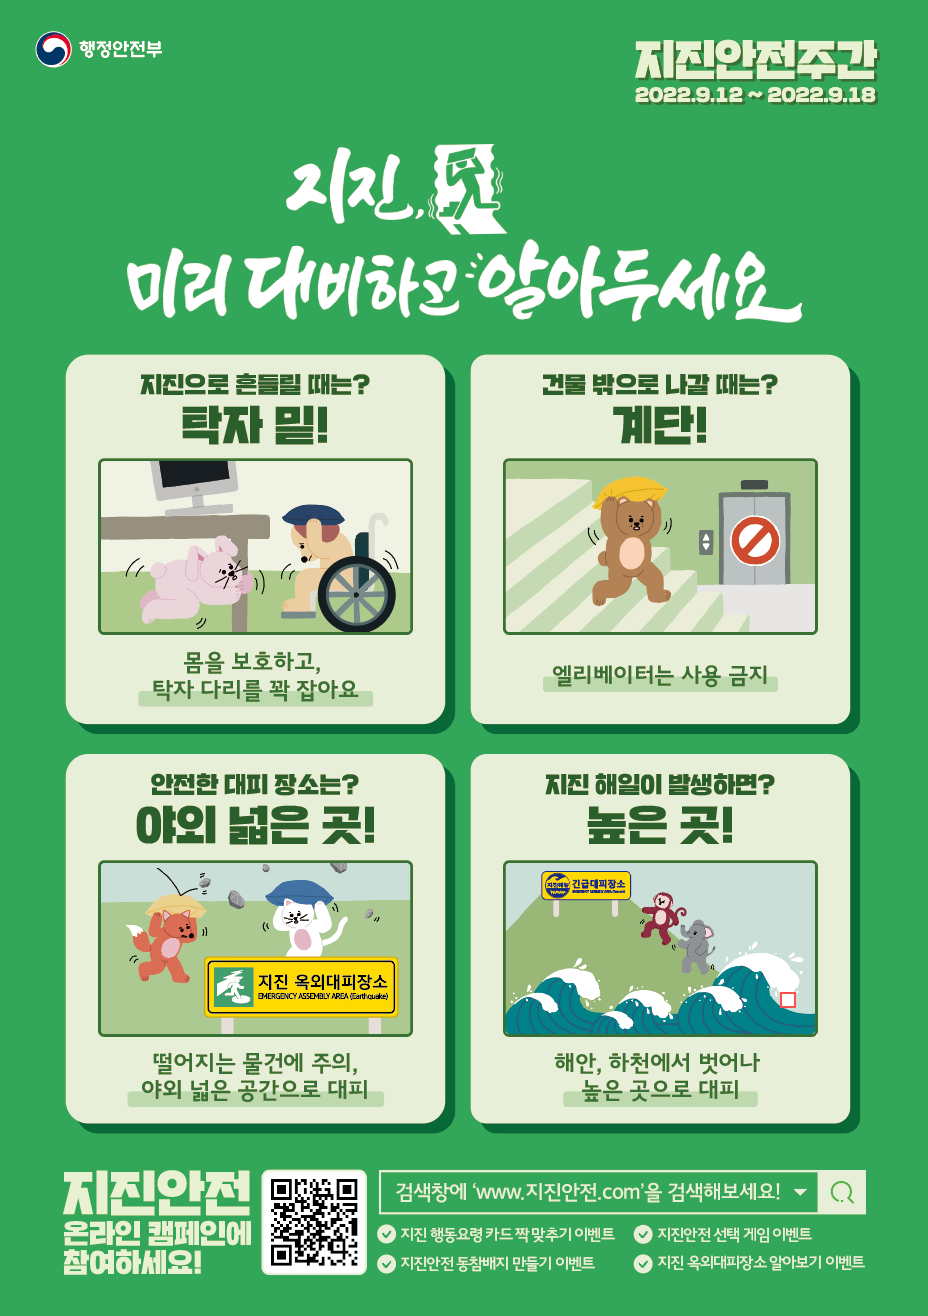 [행정안전부]지진 미리 대비하고 알아두세요-[행정안전부] 2022년 지진안전 캠페인 홍보용 포스터